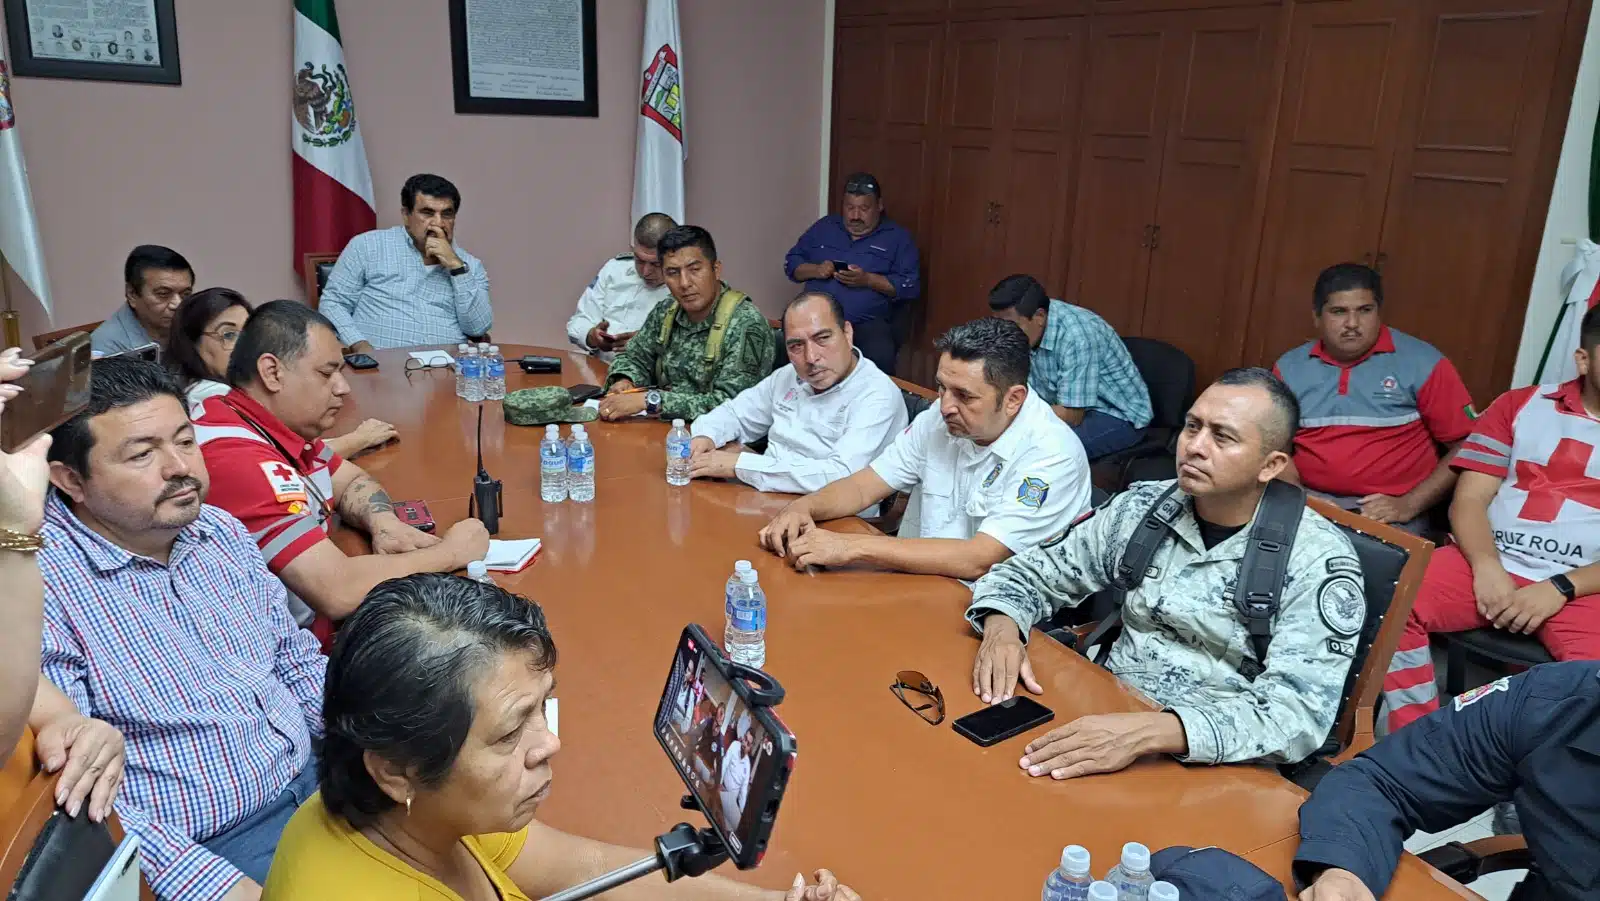 Elementos de Guardia Nacional, Ejército Mexicano y paramédicos de Cruz Roja reunidos en Salvador Alvarado